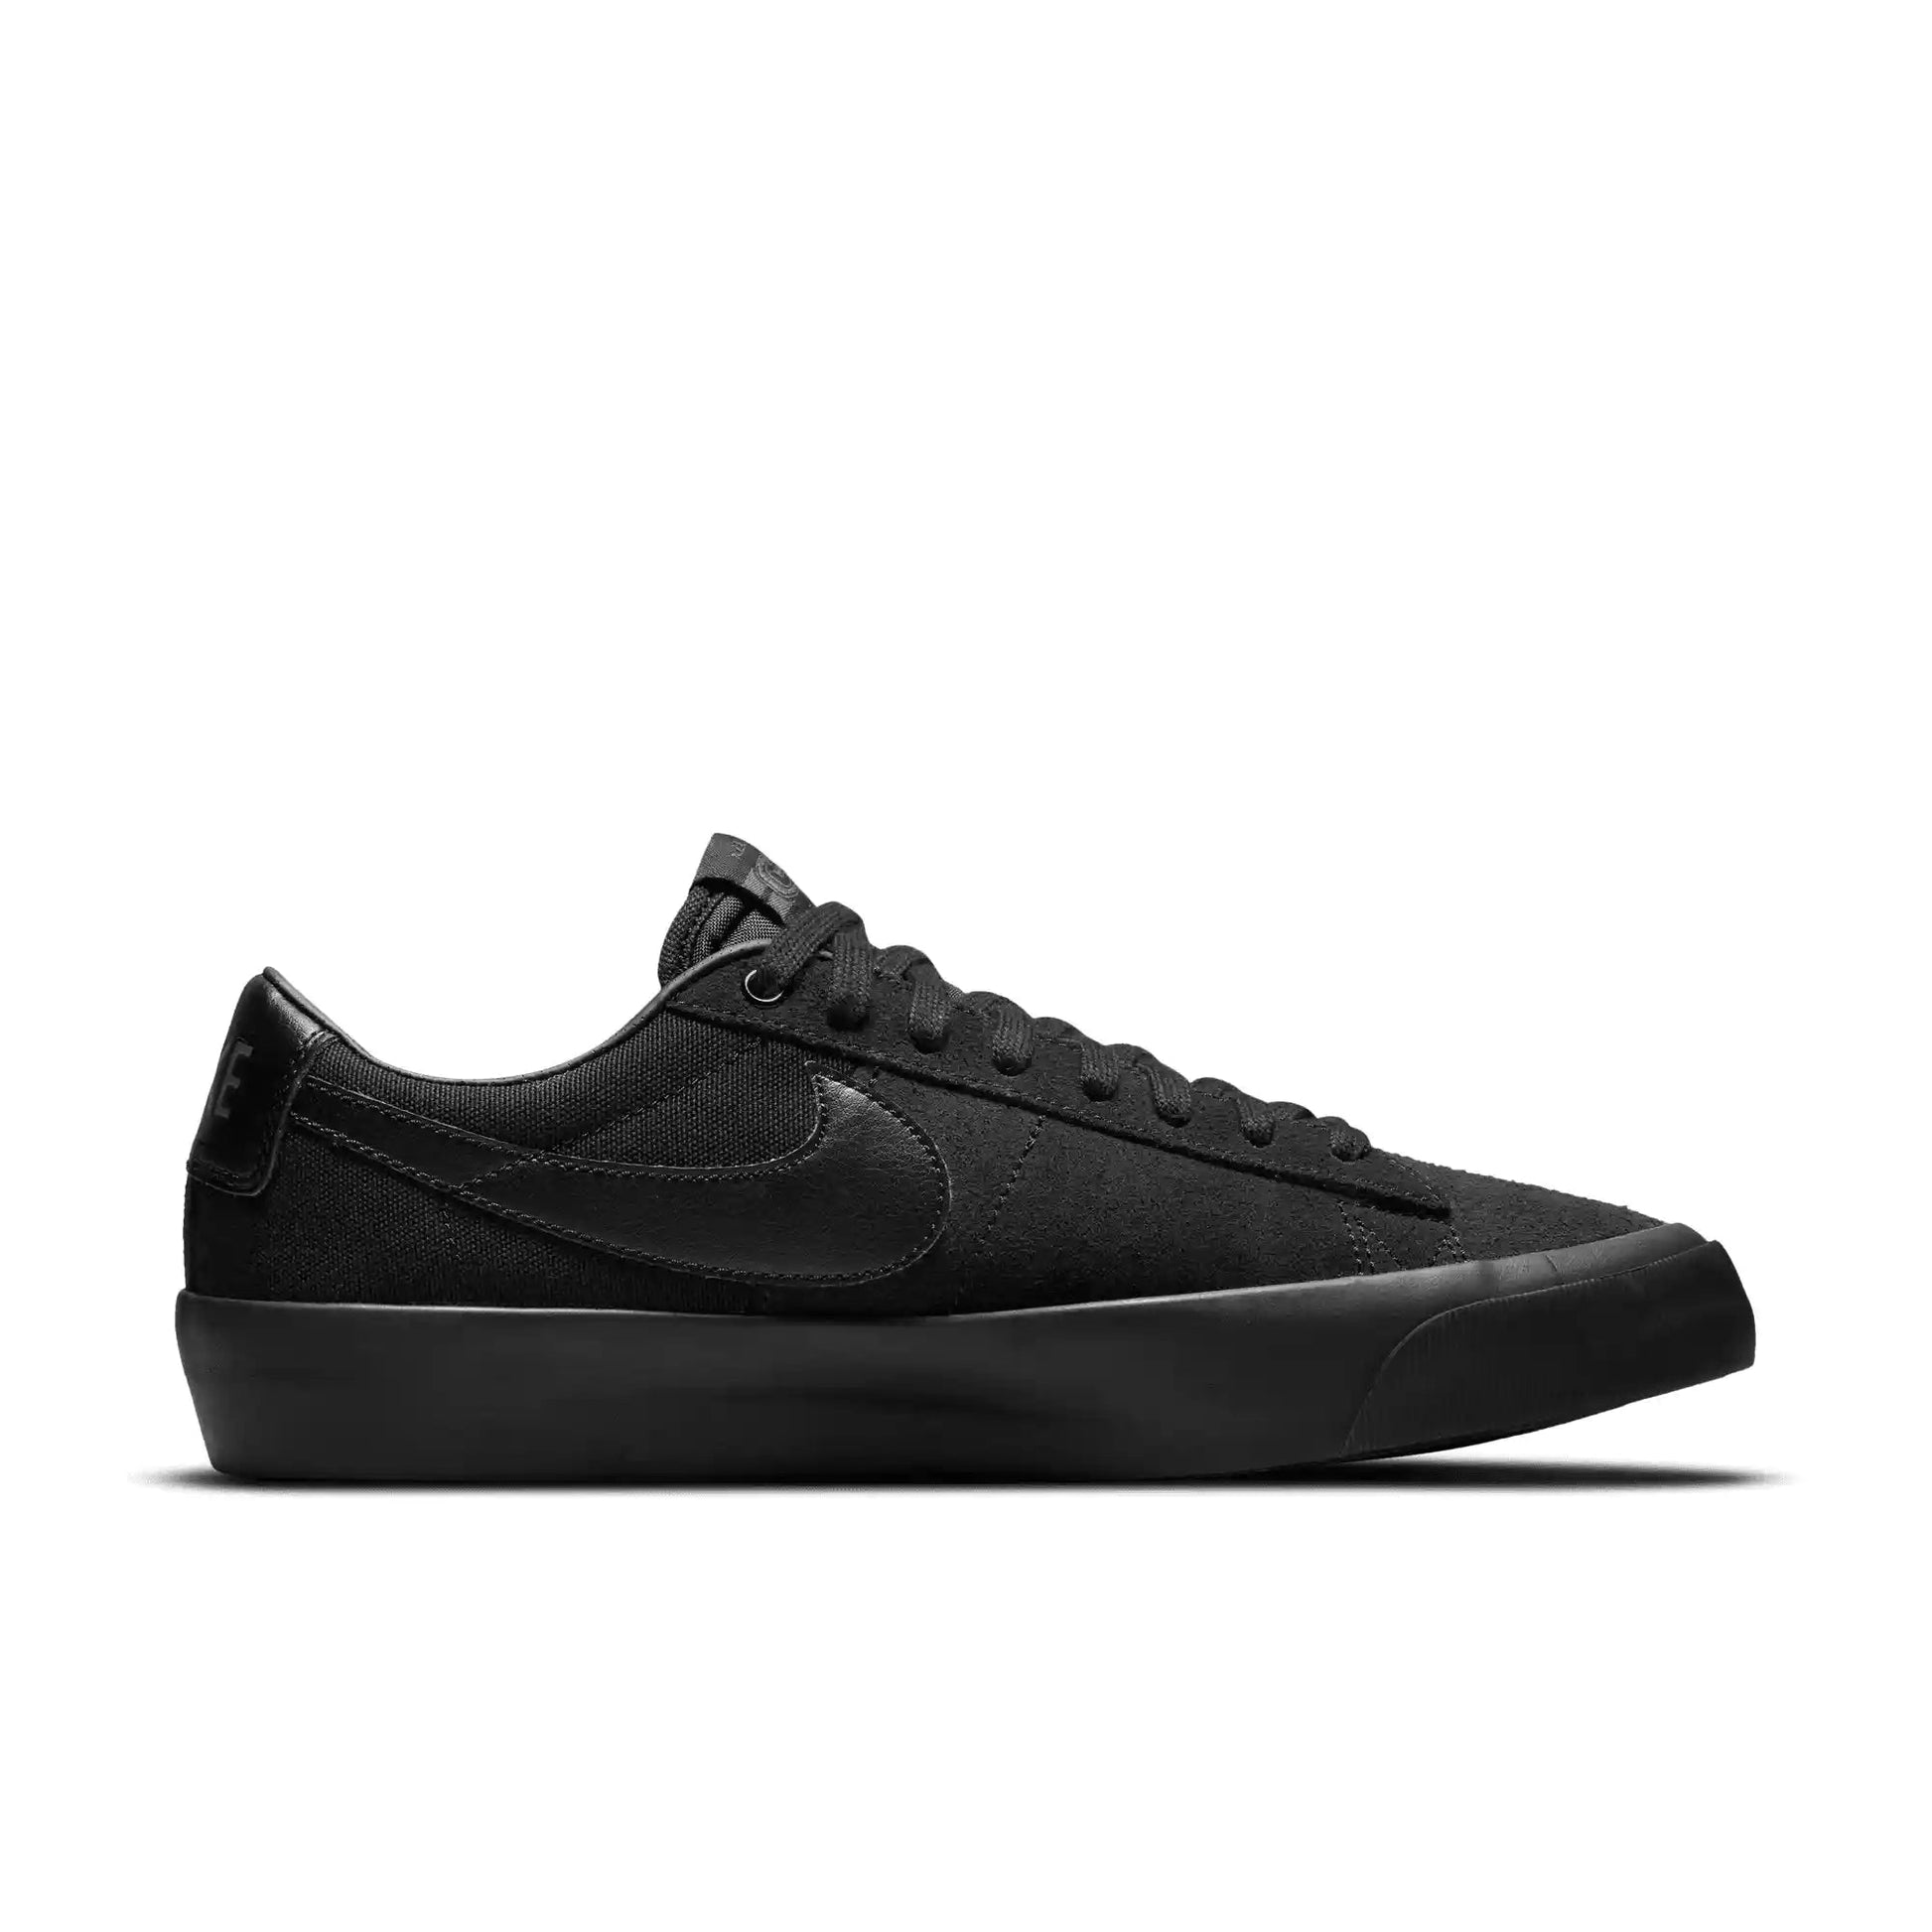 Nike SB Zoom Blazer Low Pro GT, black/black-black-anthracite - Tiki Room Skateboards - 11